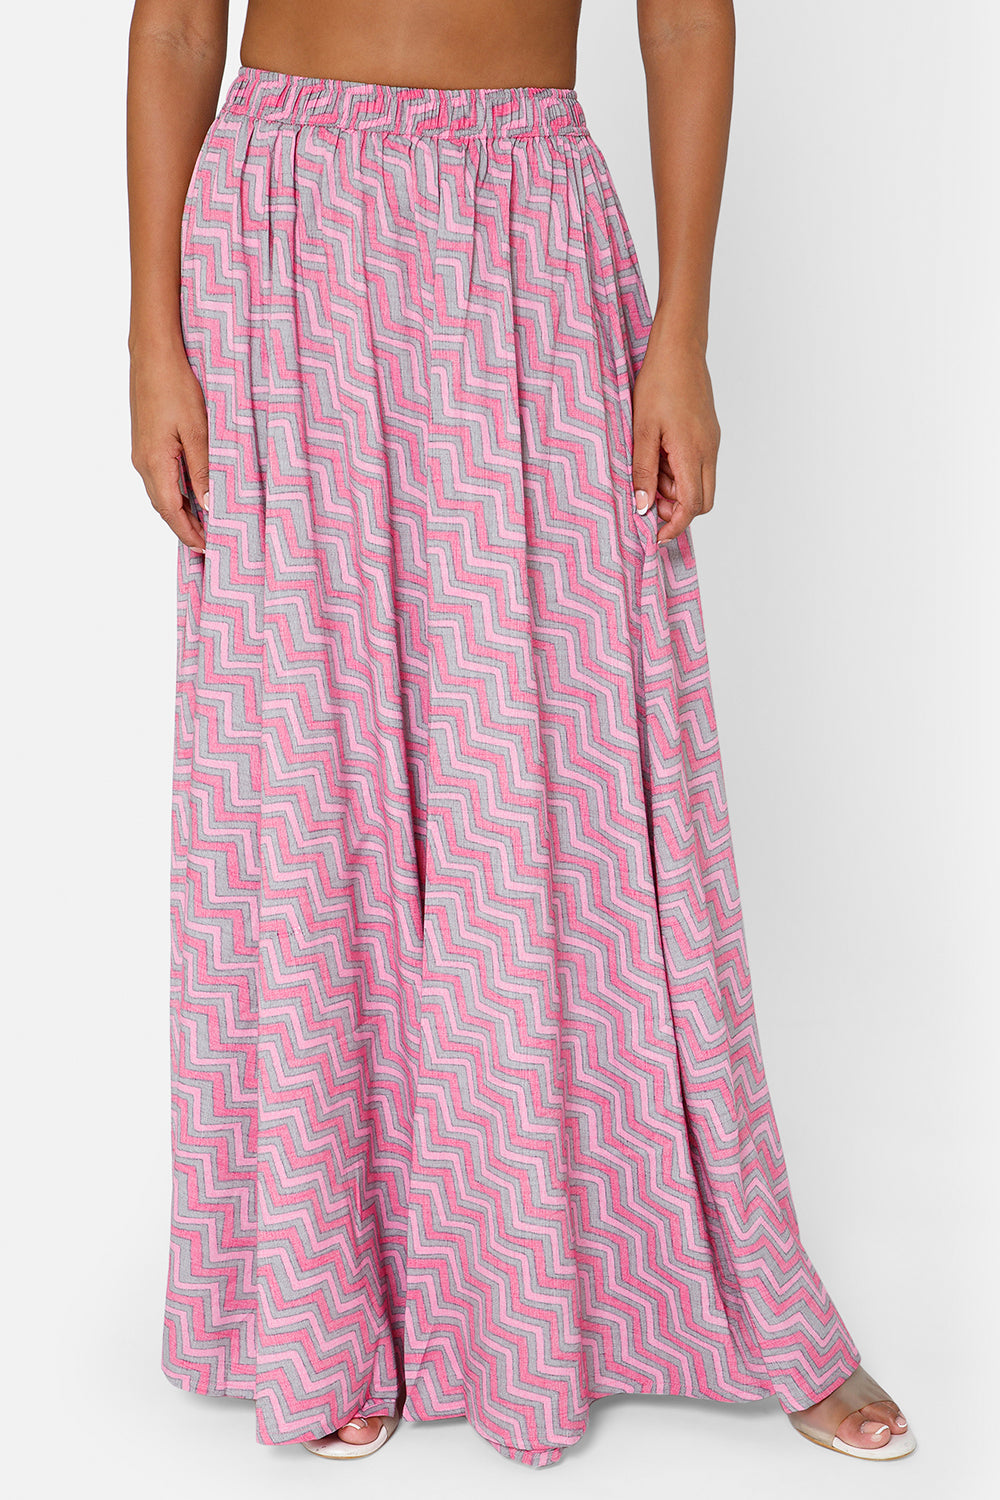 Mythri Women's Full Flare Skirt - Pink - SK05